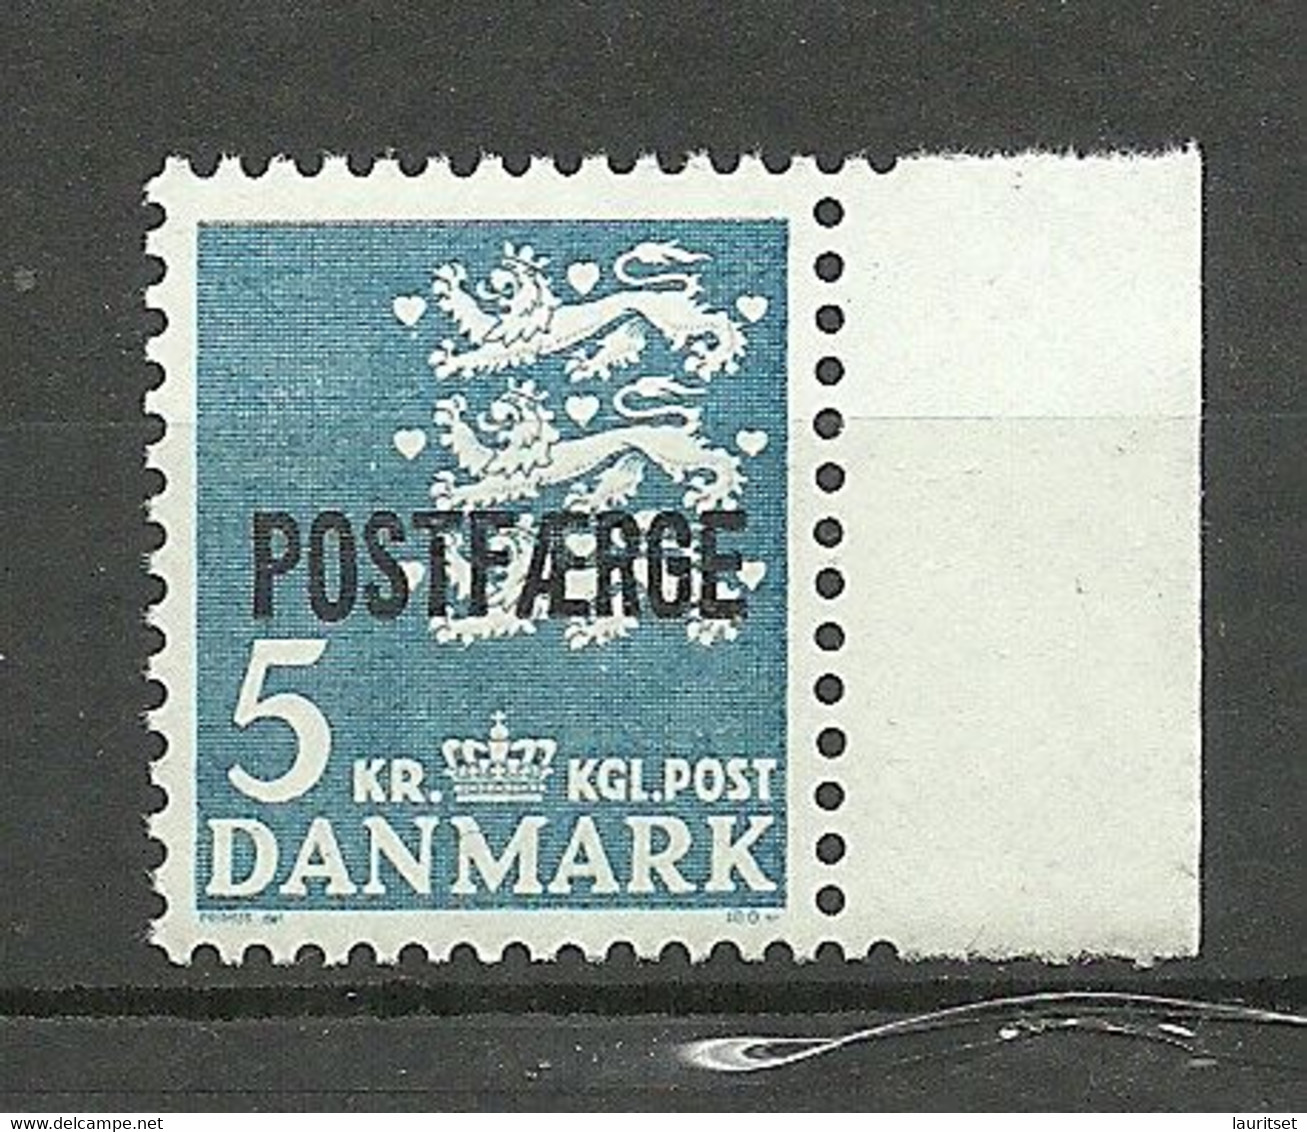 DENMARK Dänemark 1972 Michel 44 MNH Postfähre Paketmarke - Paketmarken